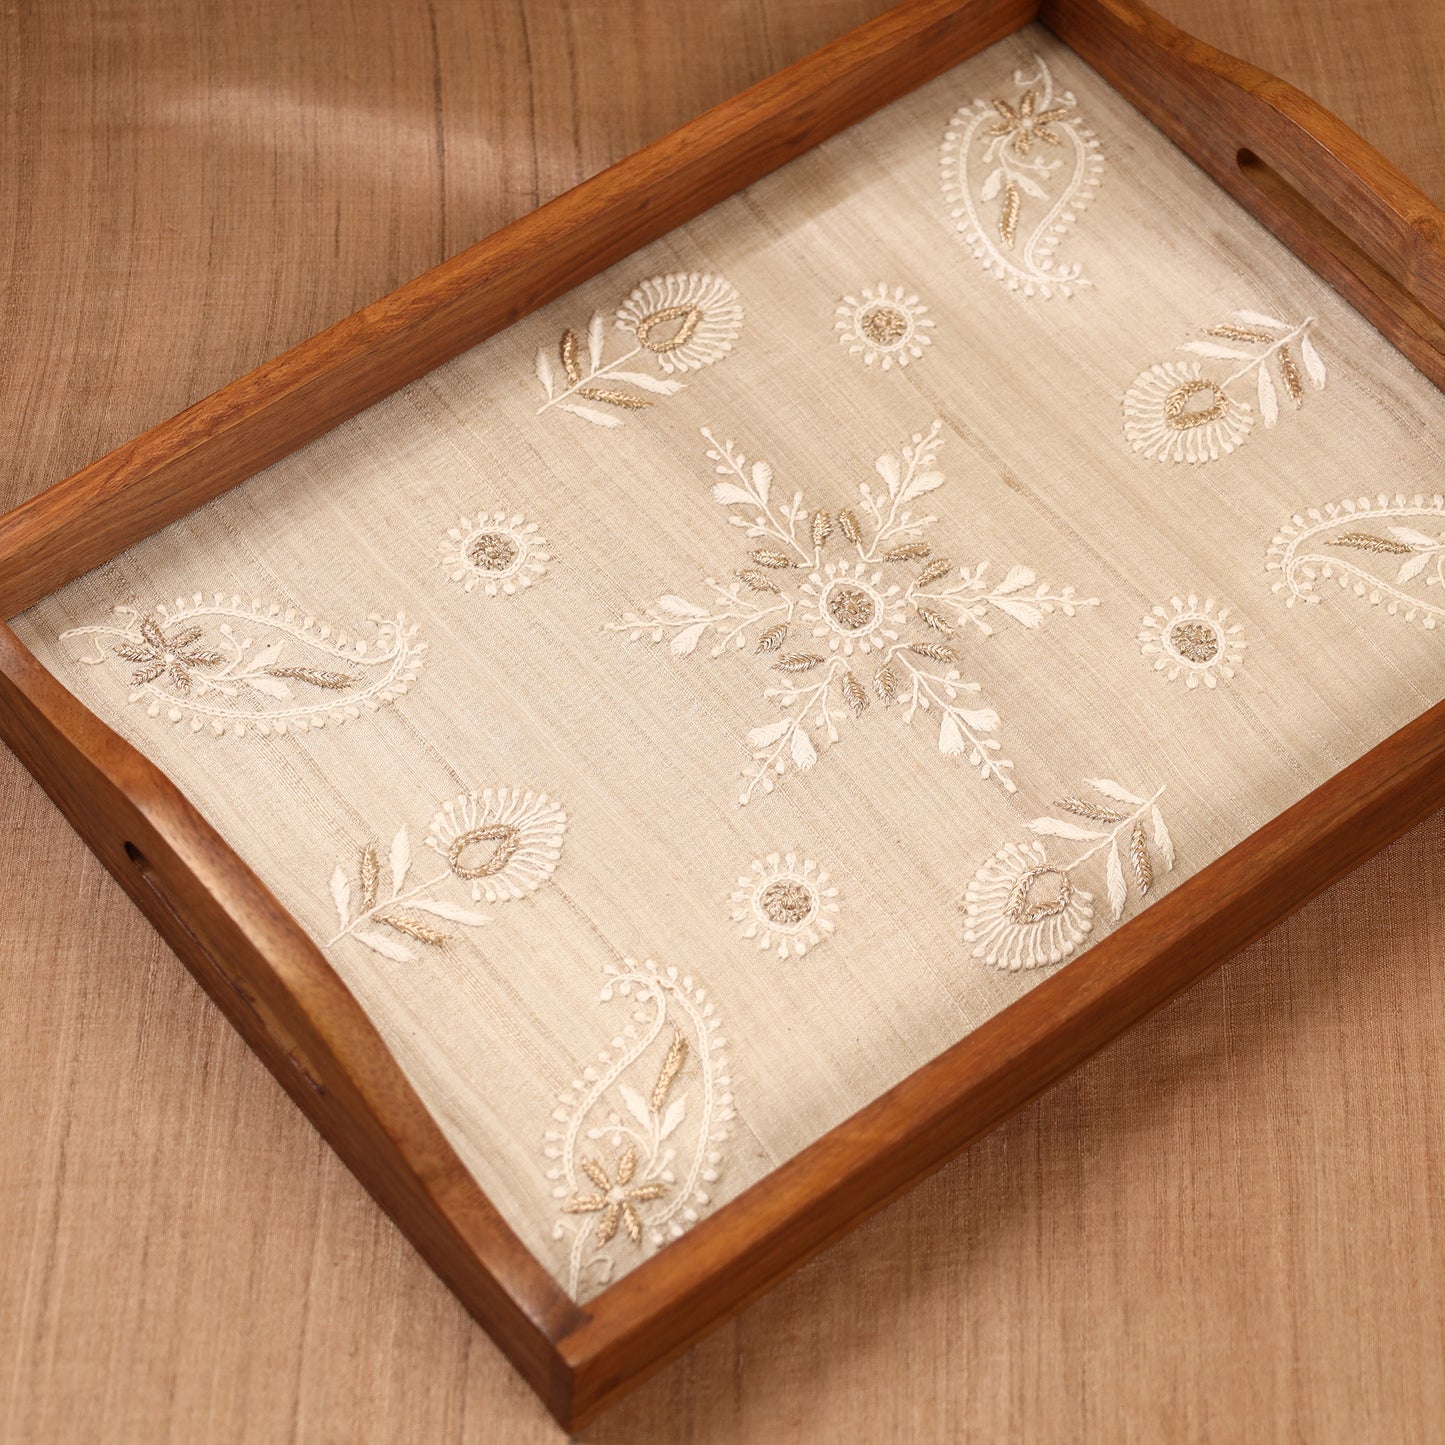 Chikankari Zari Hand Embroidered Sheesham Wood Tray